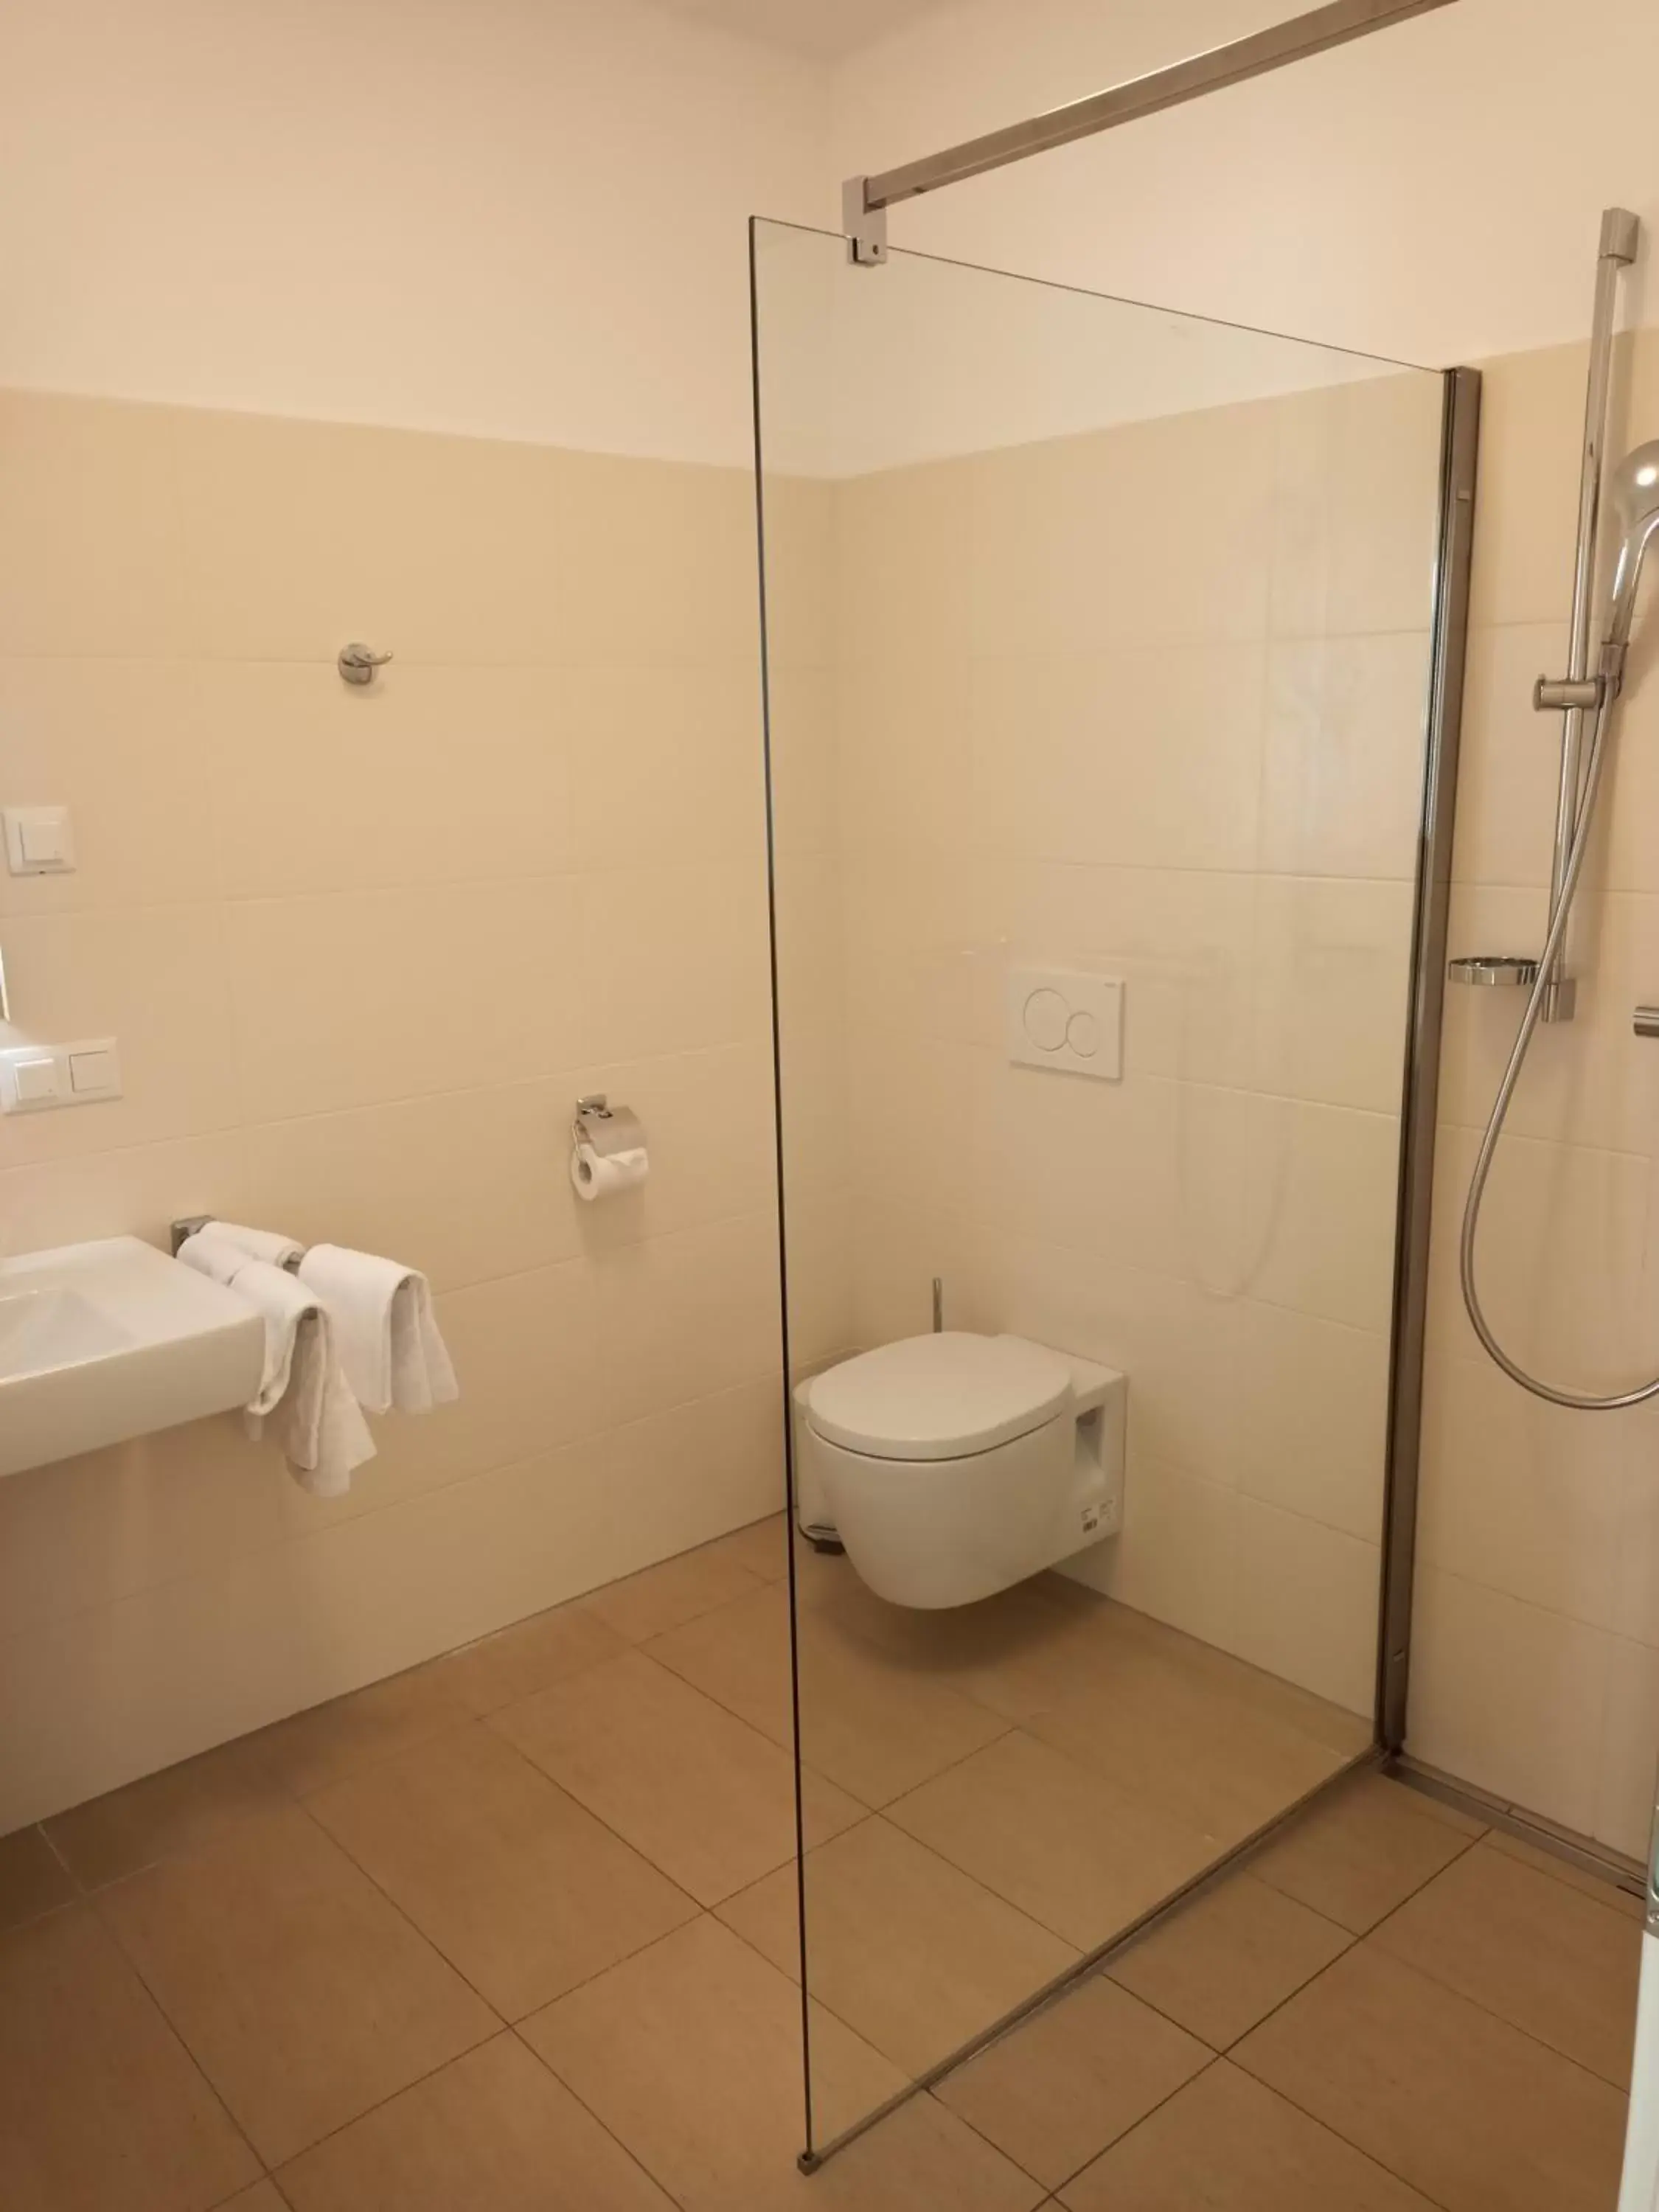 Shower, Bathroom in Adlerhof